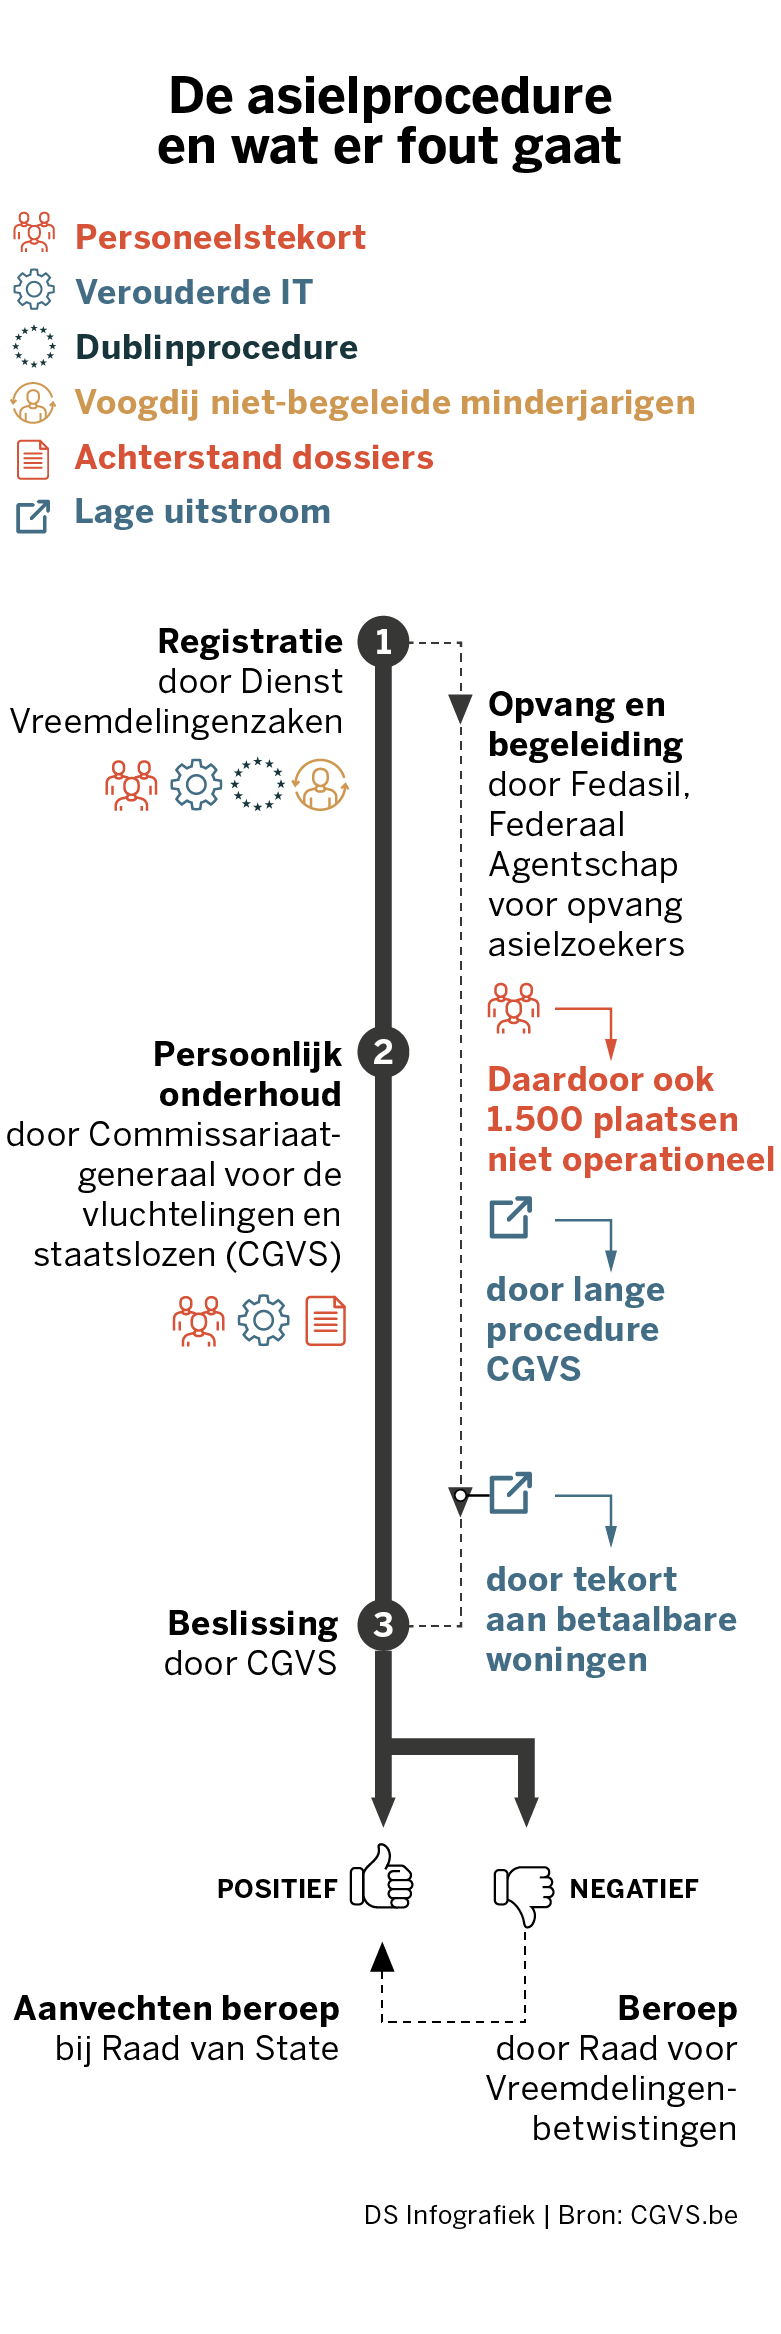 Un permis de conduire belge  Fedasil info - informatieplatform voor  asielzoekers in België